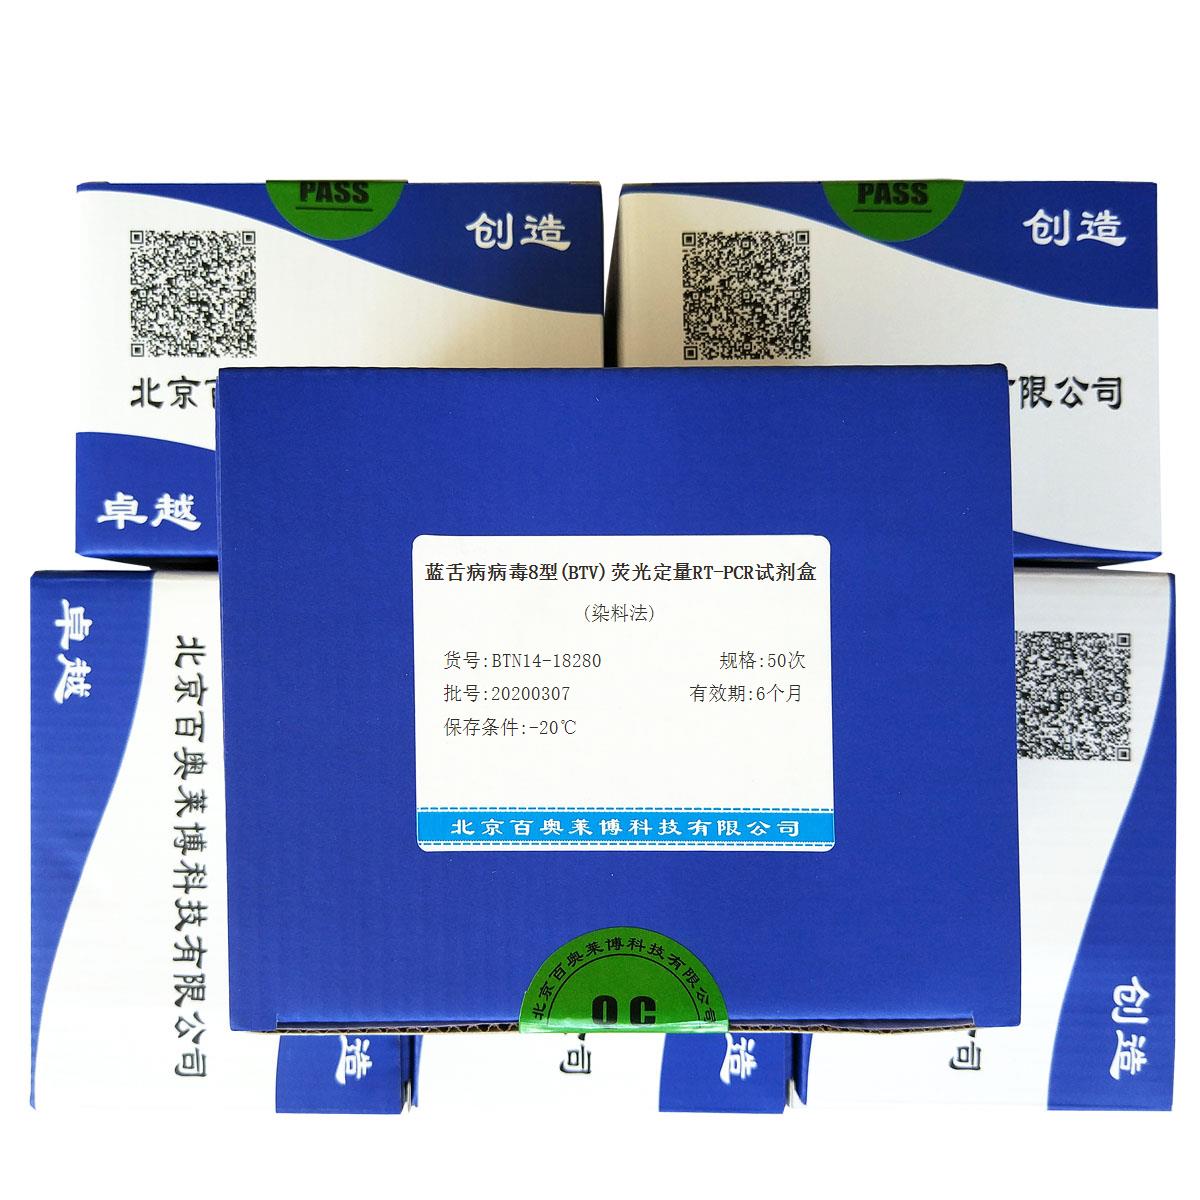 蓝舌病病毒8型(BTV)荧光定量RT-PCR试剂盒(染料法)